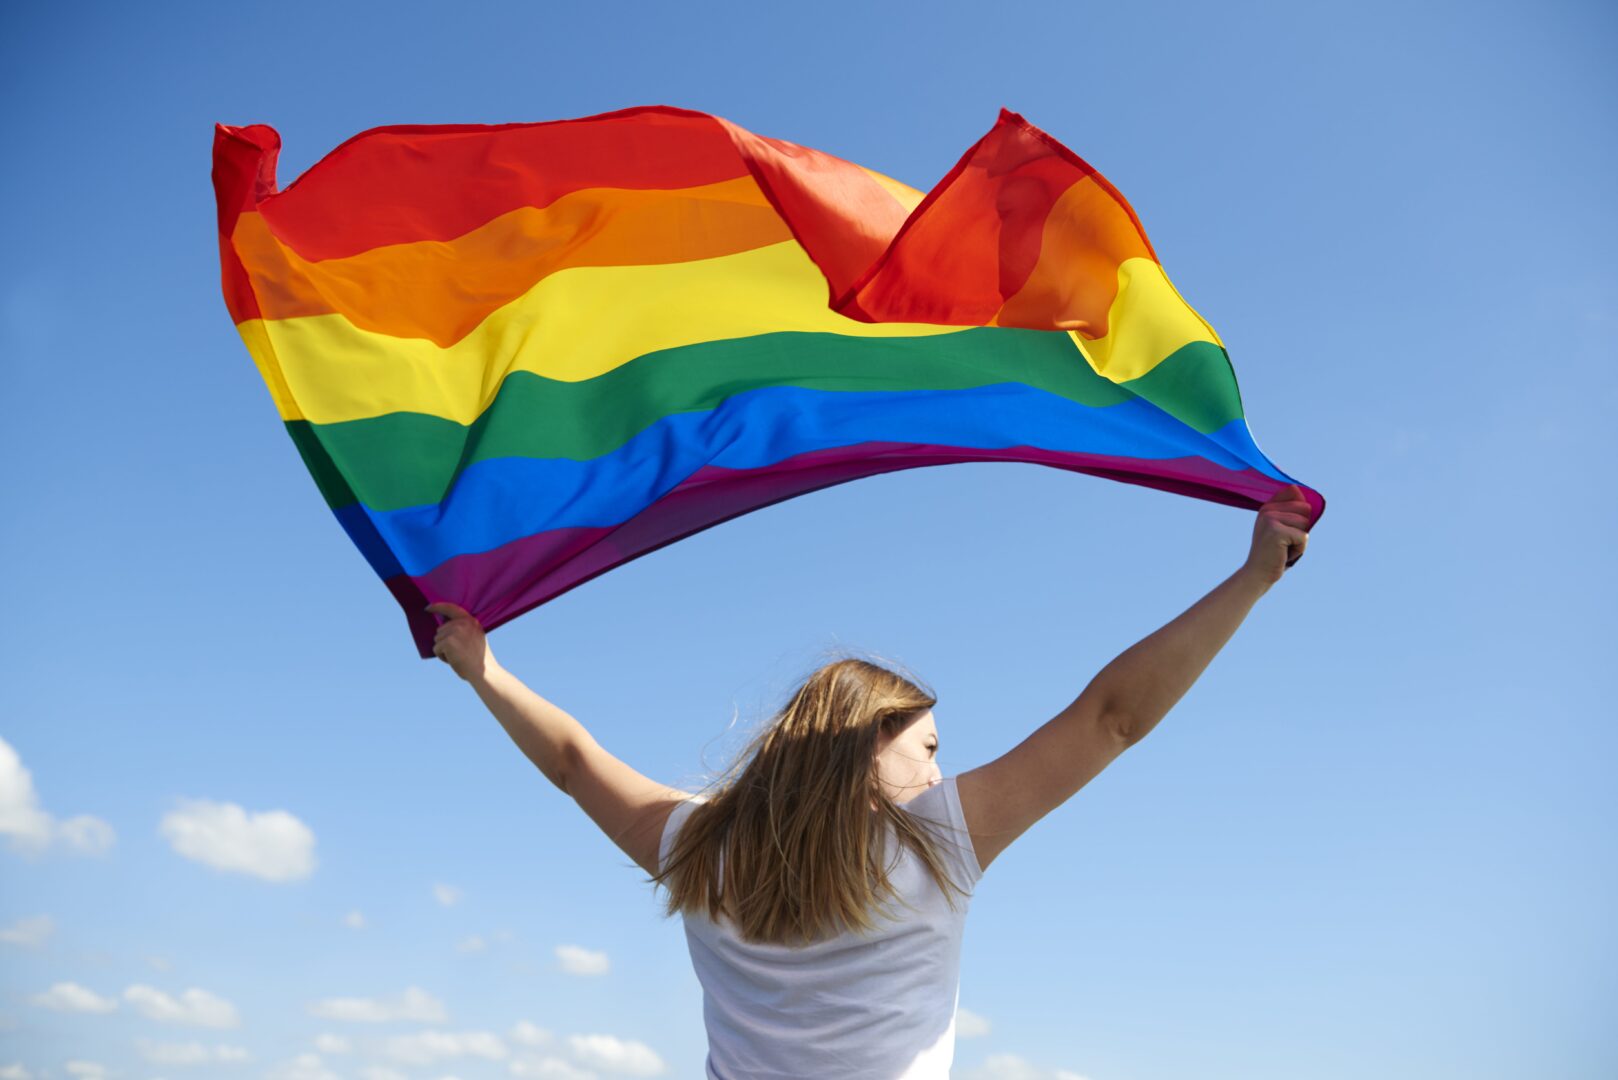 Bandeira do movimento LGBTQIAP+